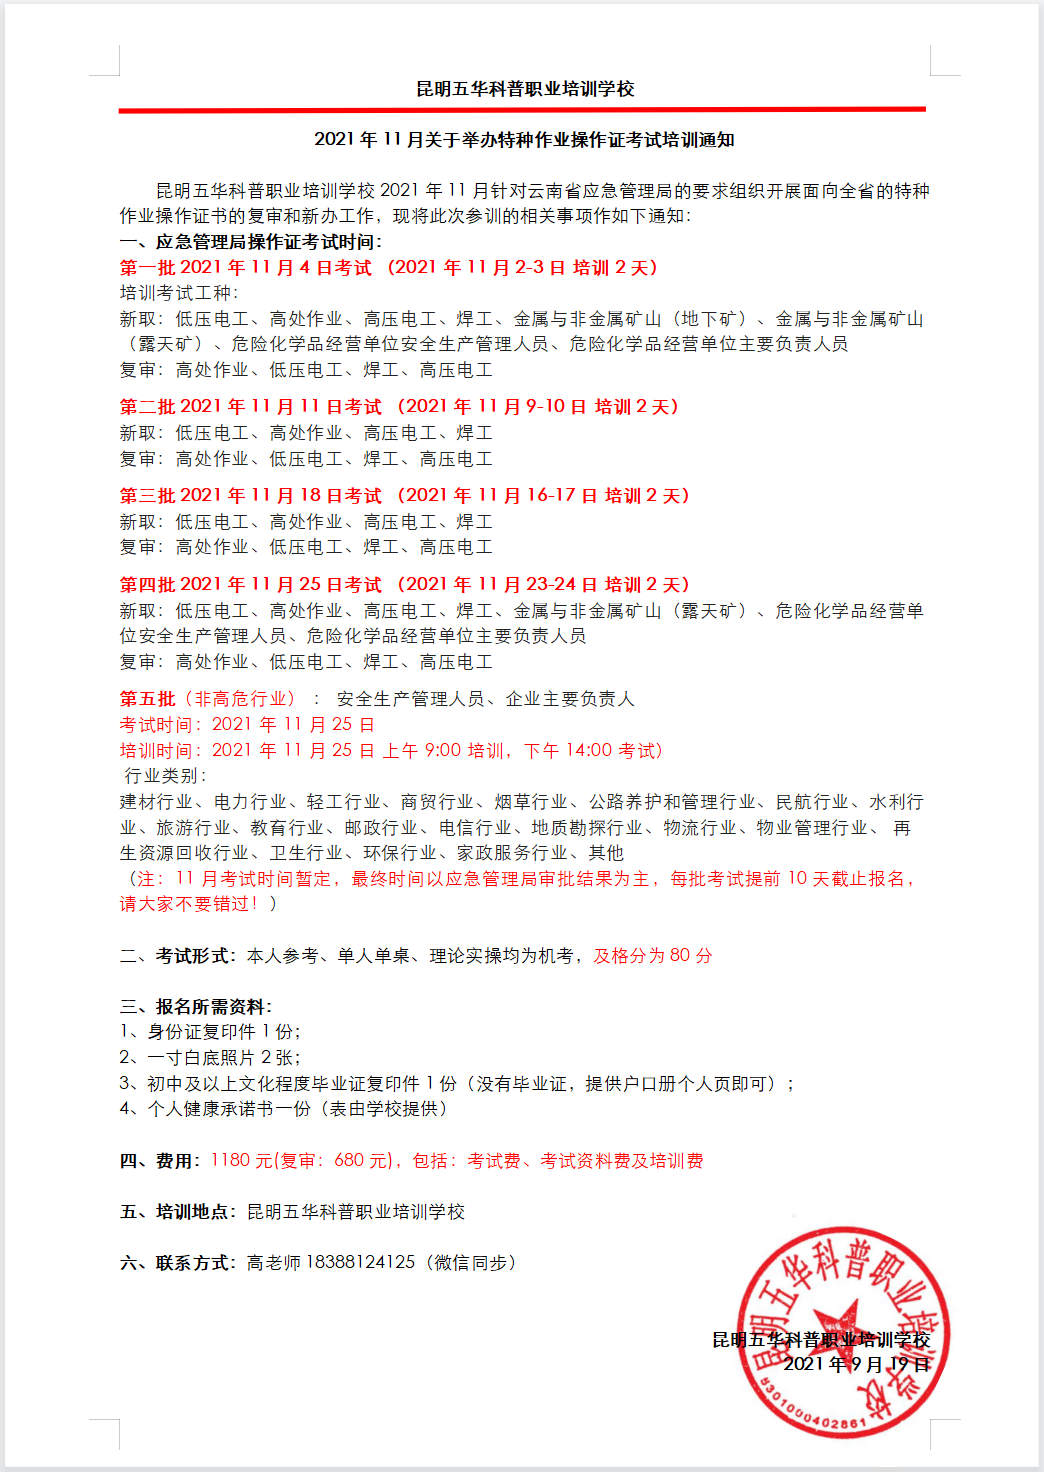 2021年11月18日云南省高压证考试培训计划的通知